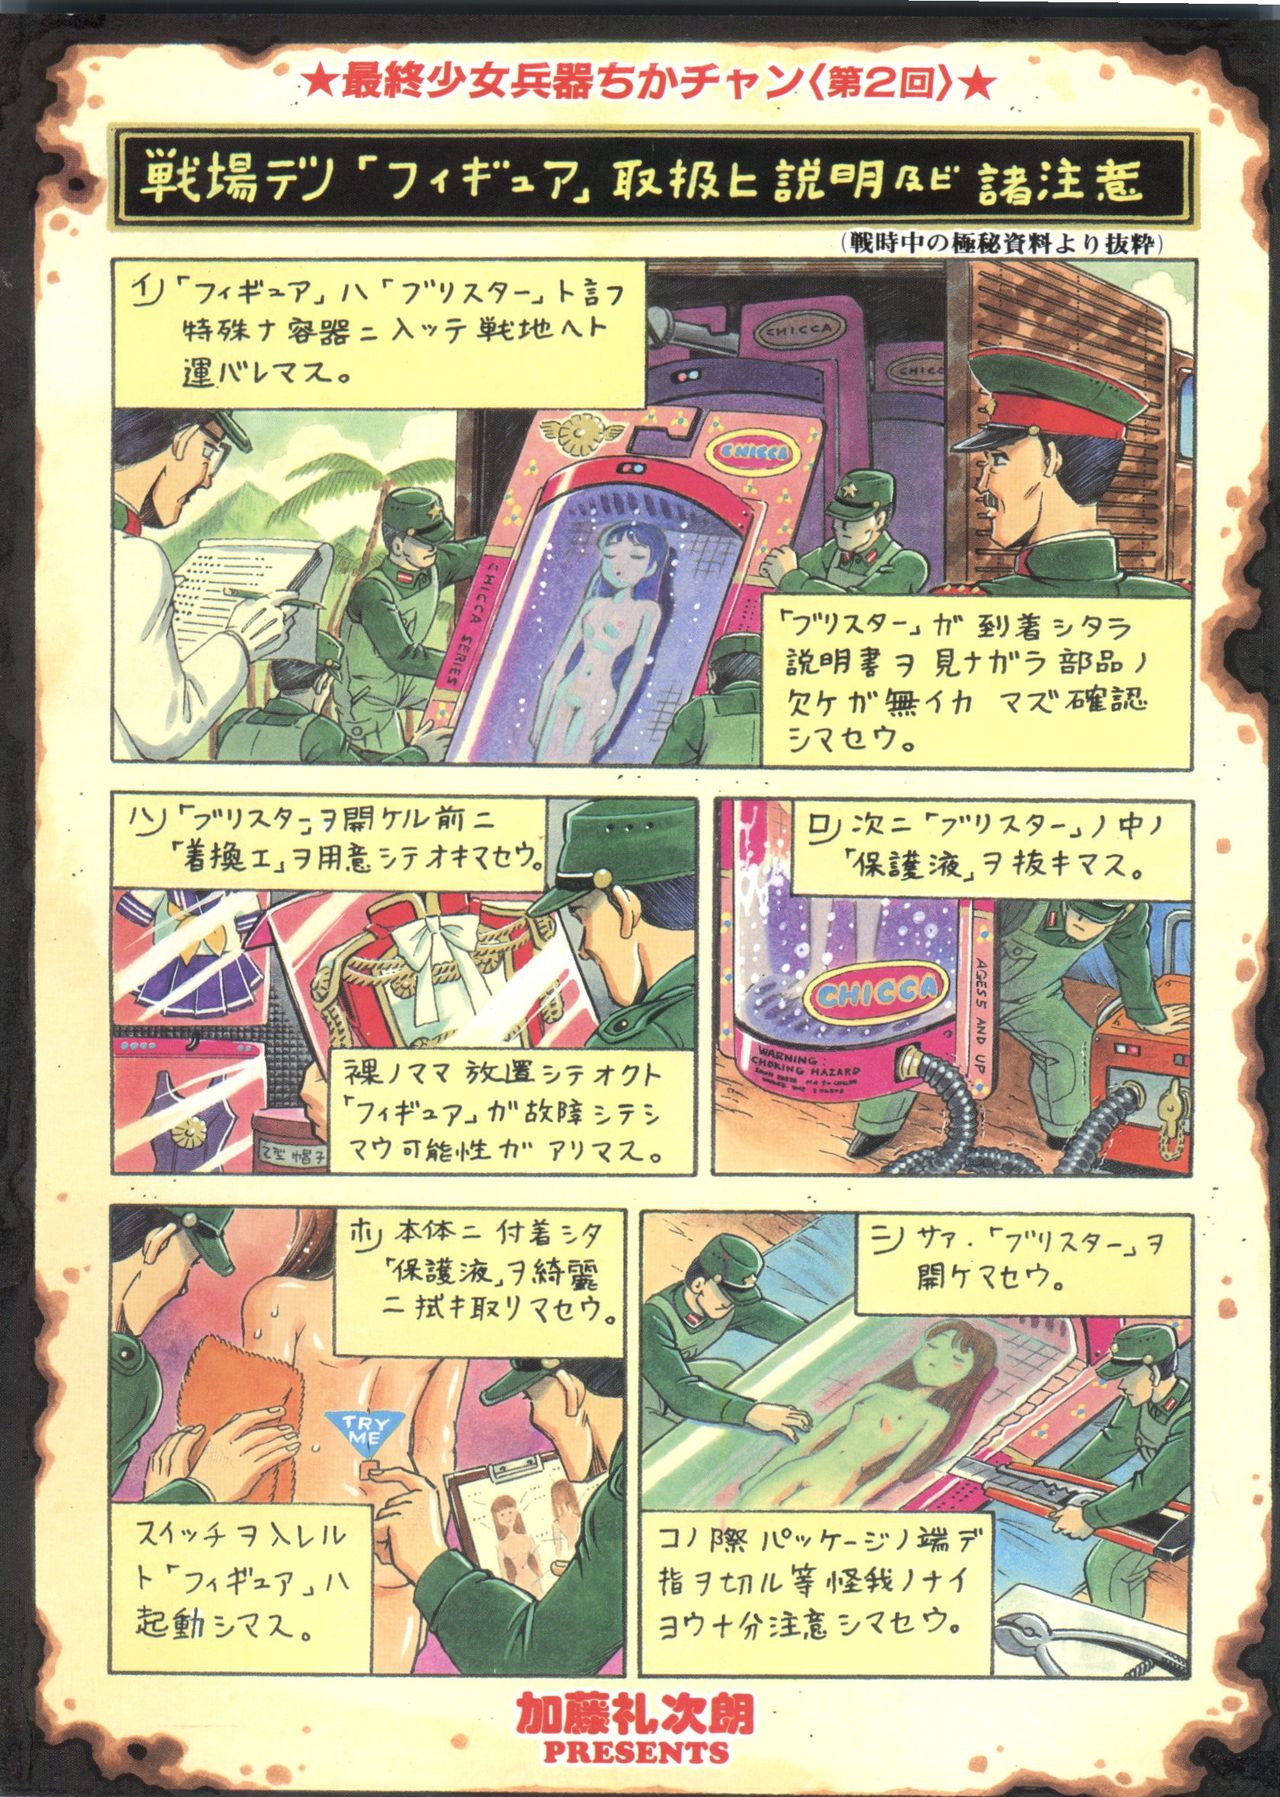 [アンソロジー] パイク Pai.kuu 1999 Oct vol.22 神無月